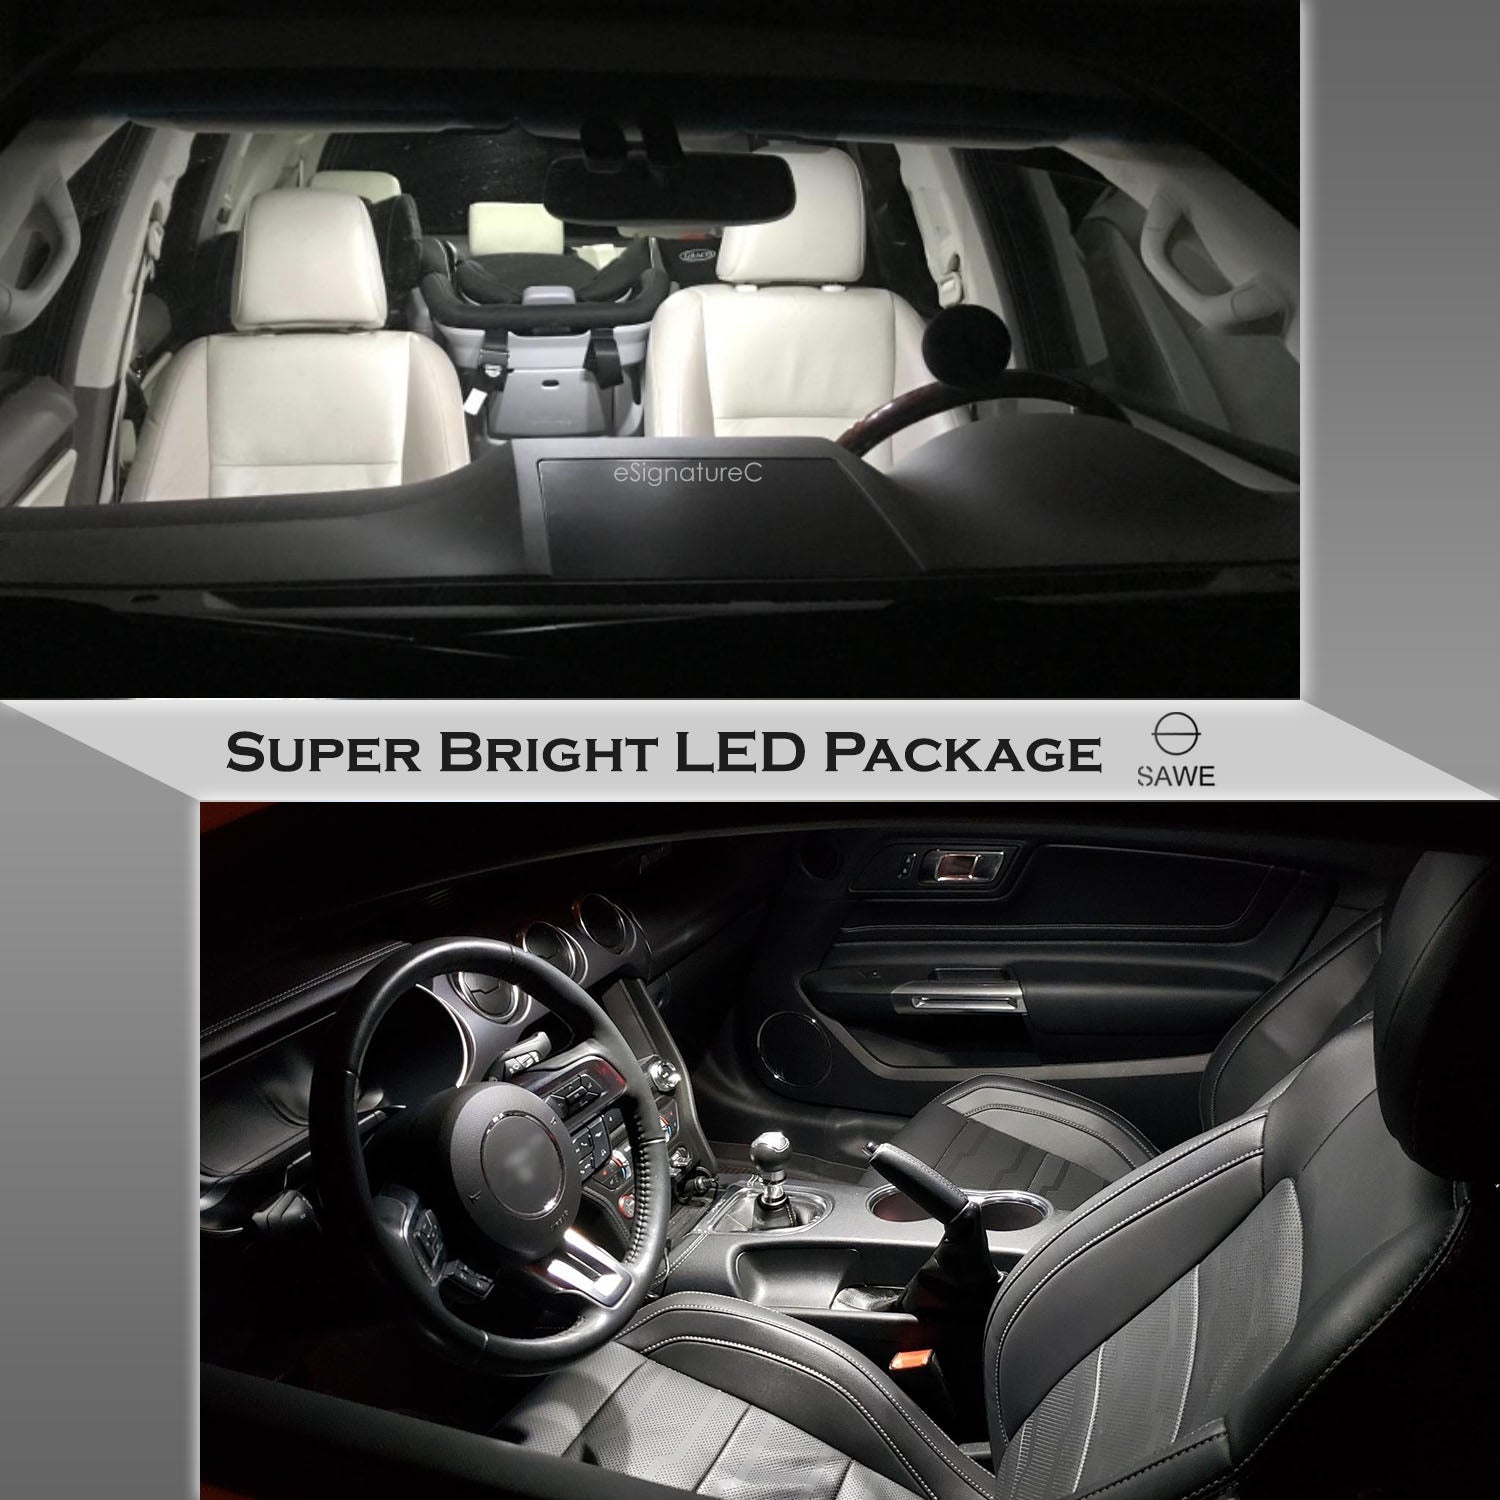 For Volkswagen Passat Interior LED Lights - Dome & Map Light Bulbs Package Kit for 2006 - 2011 - White